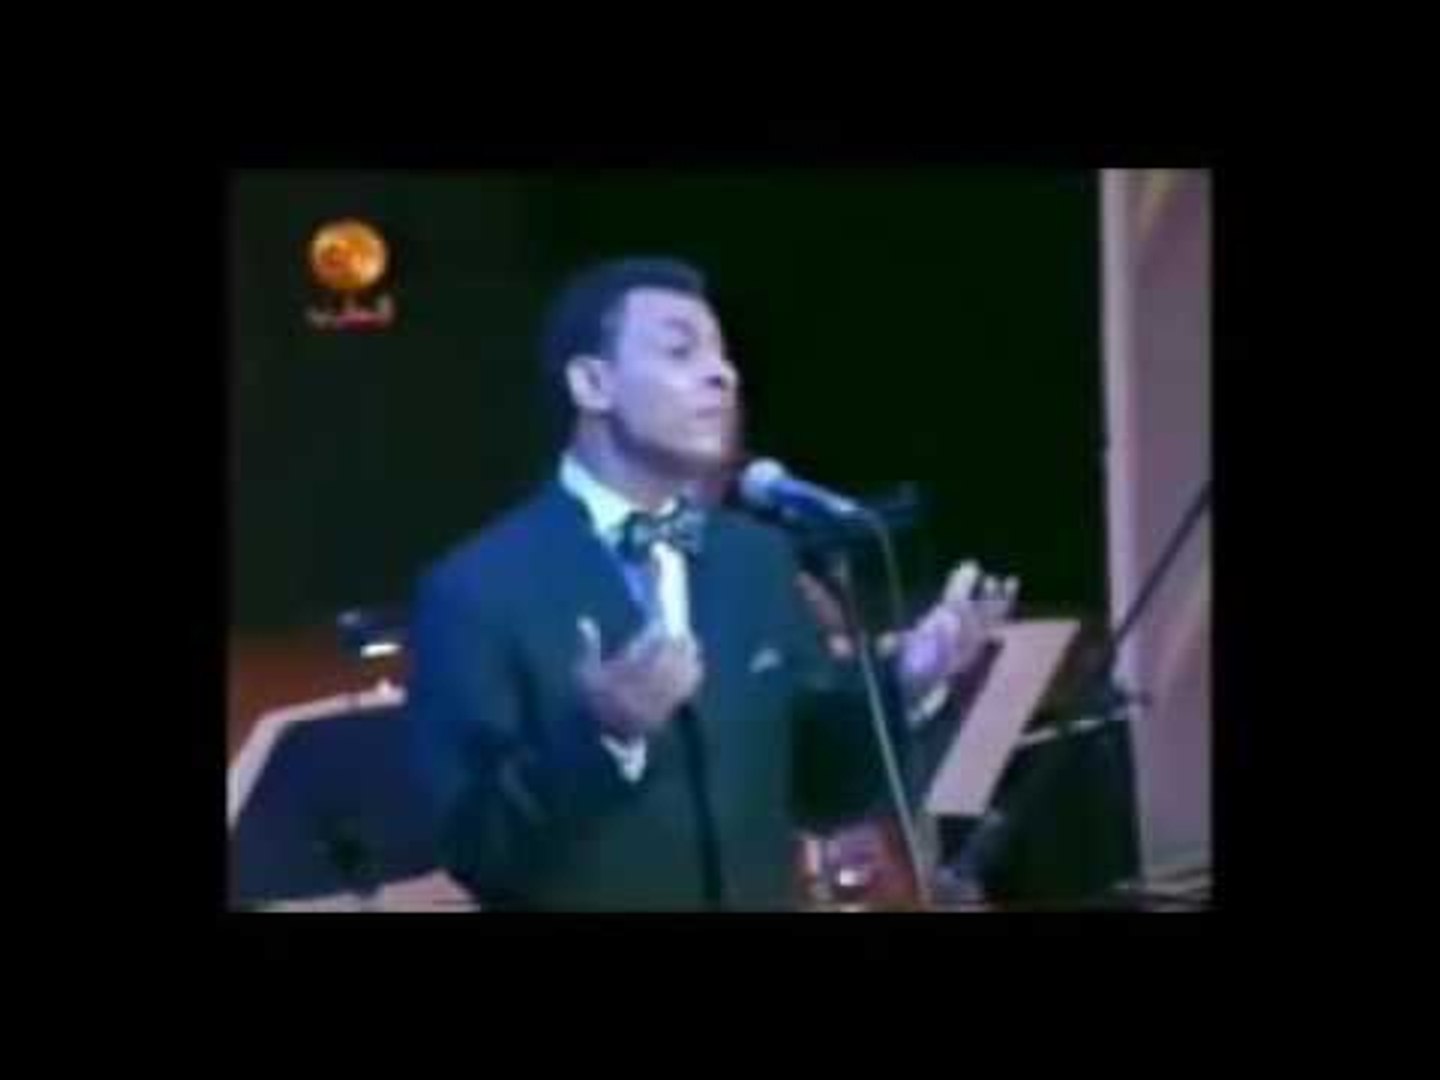 محمد الطوخي يغني رسالة من تحت الماء دار الأوبرا Video Dailymotion